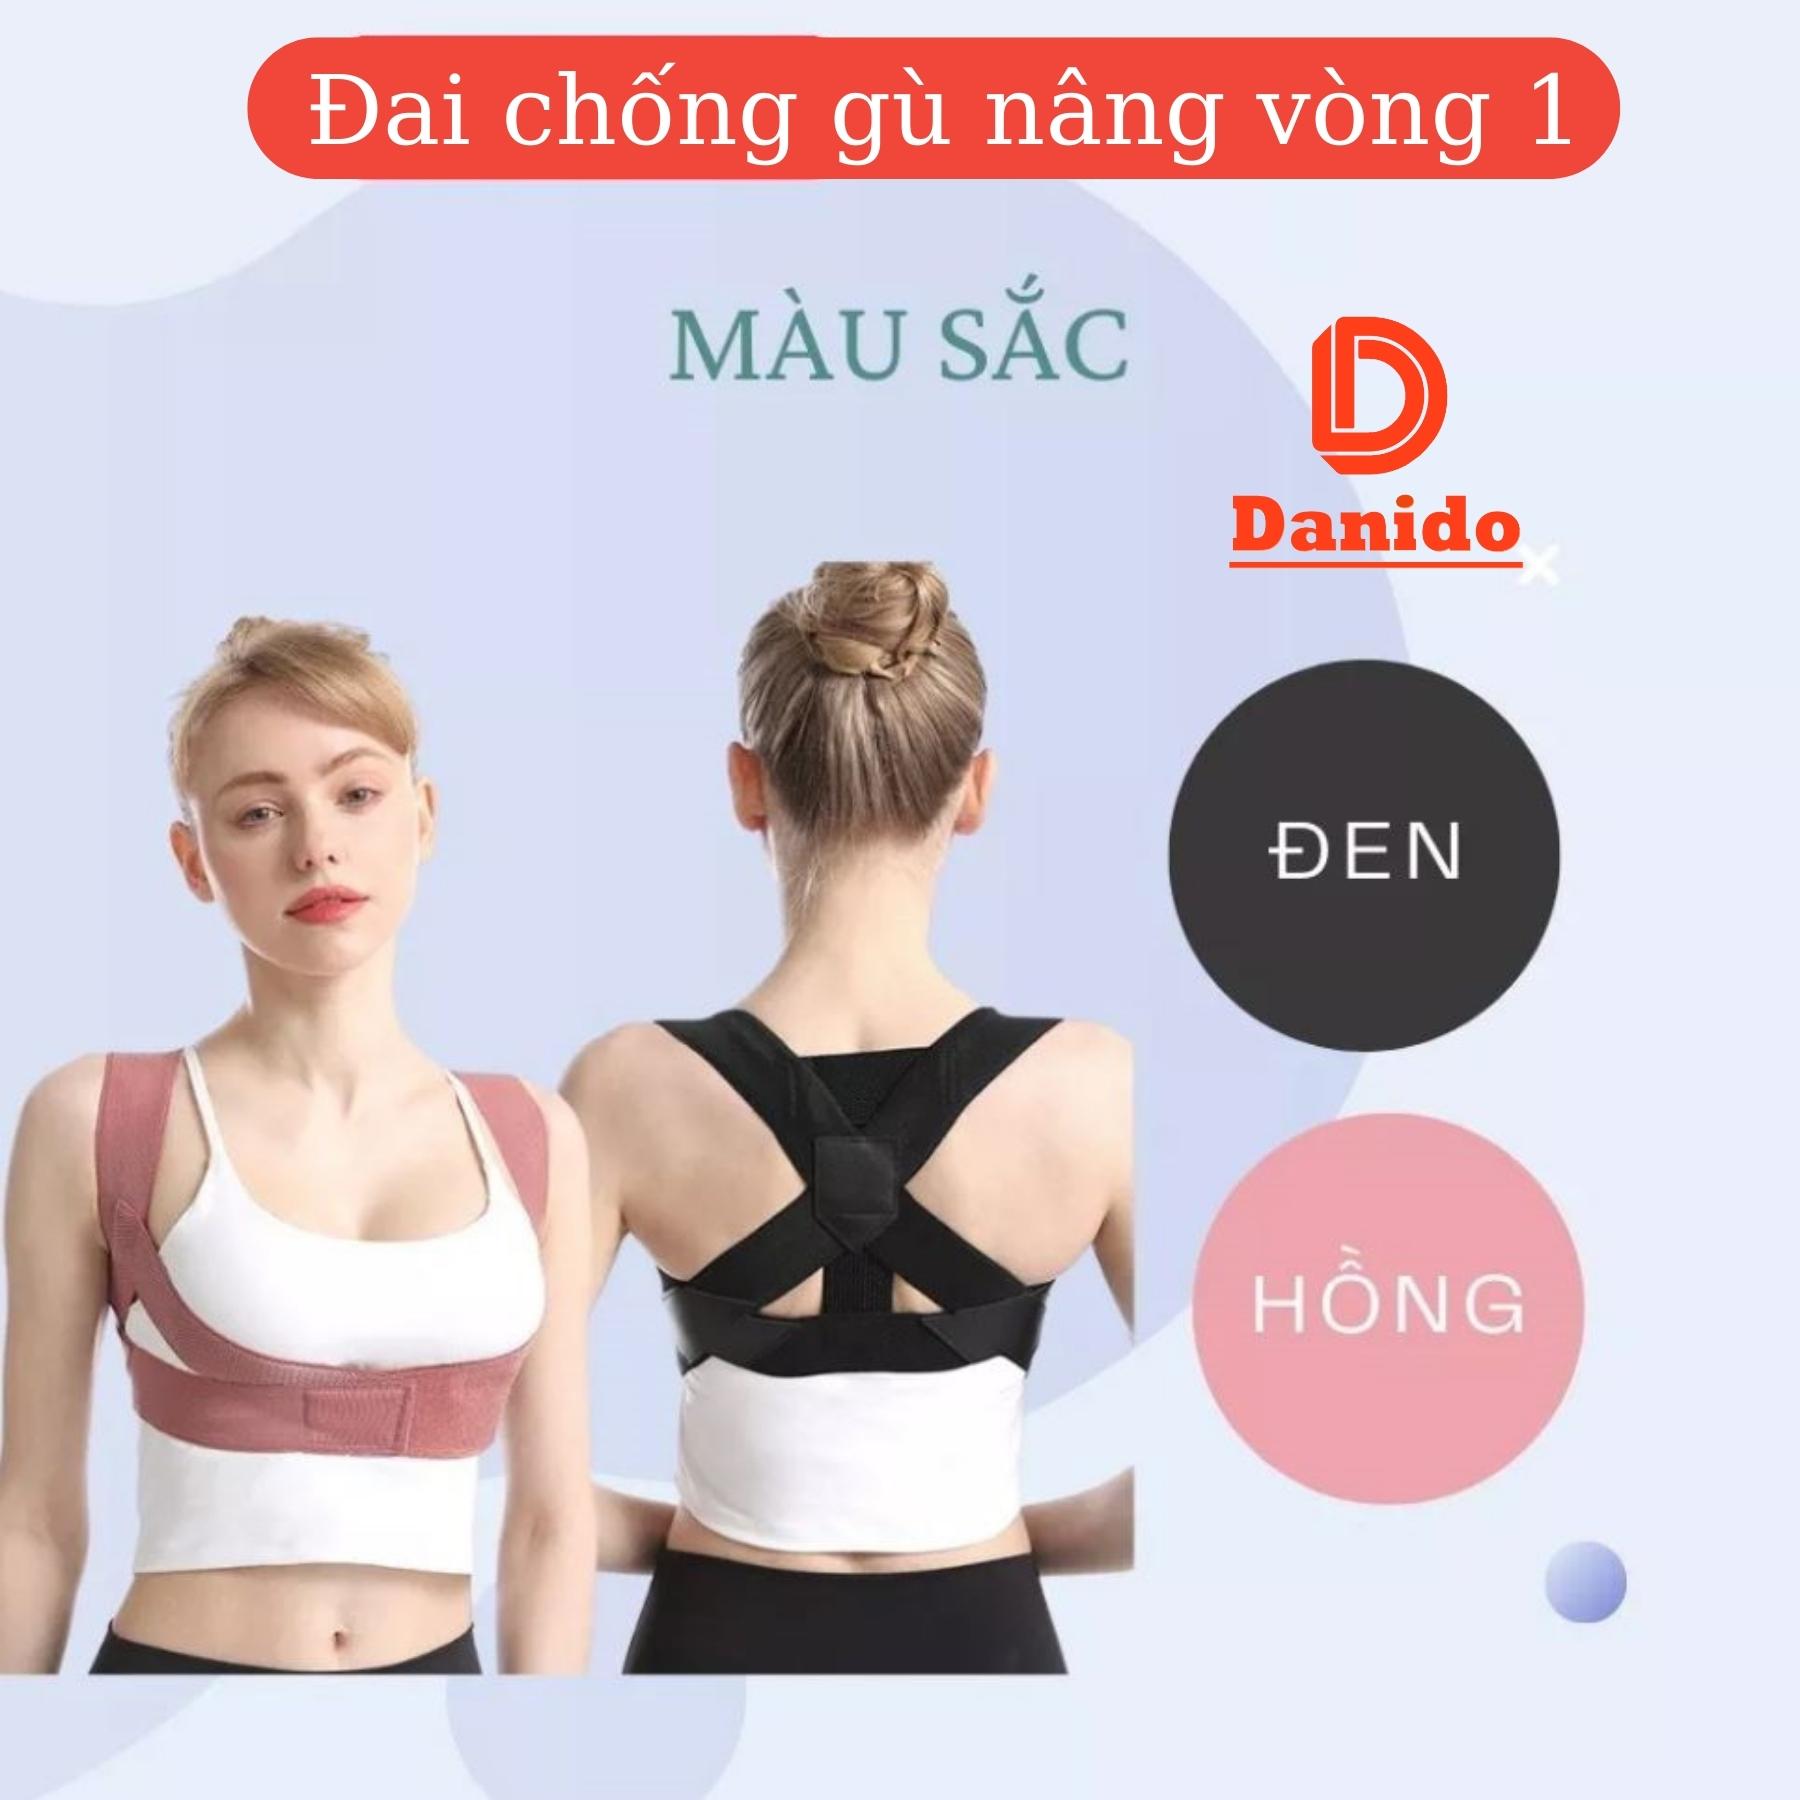 Đai chống gù lưng cải tiến 4.0 mới giúp định hình lưng thẳng khi tập thể dục thể thao - Hàng chính hãng D Danido